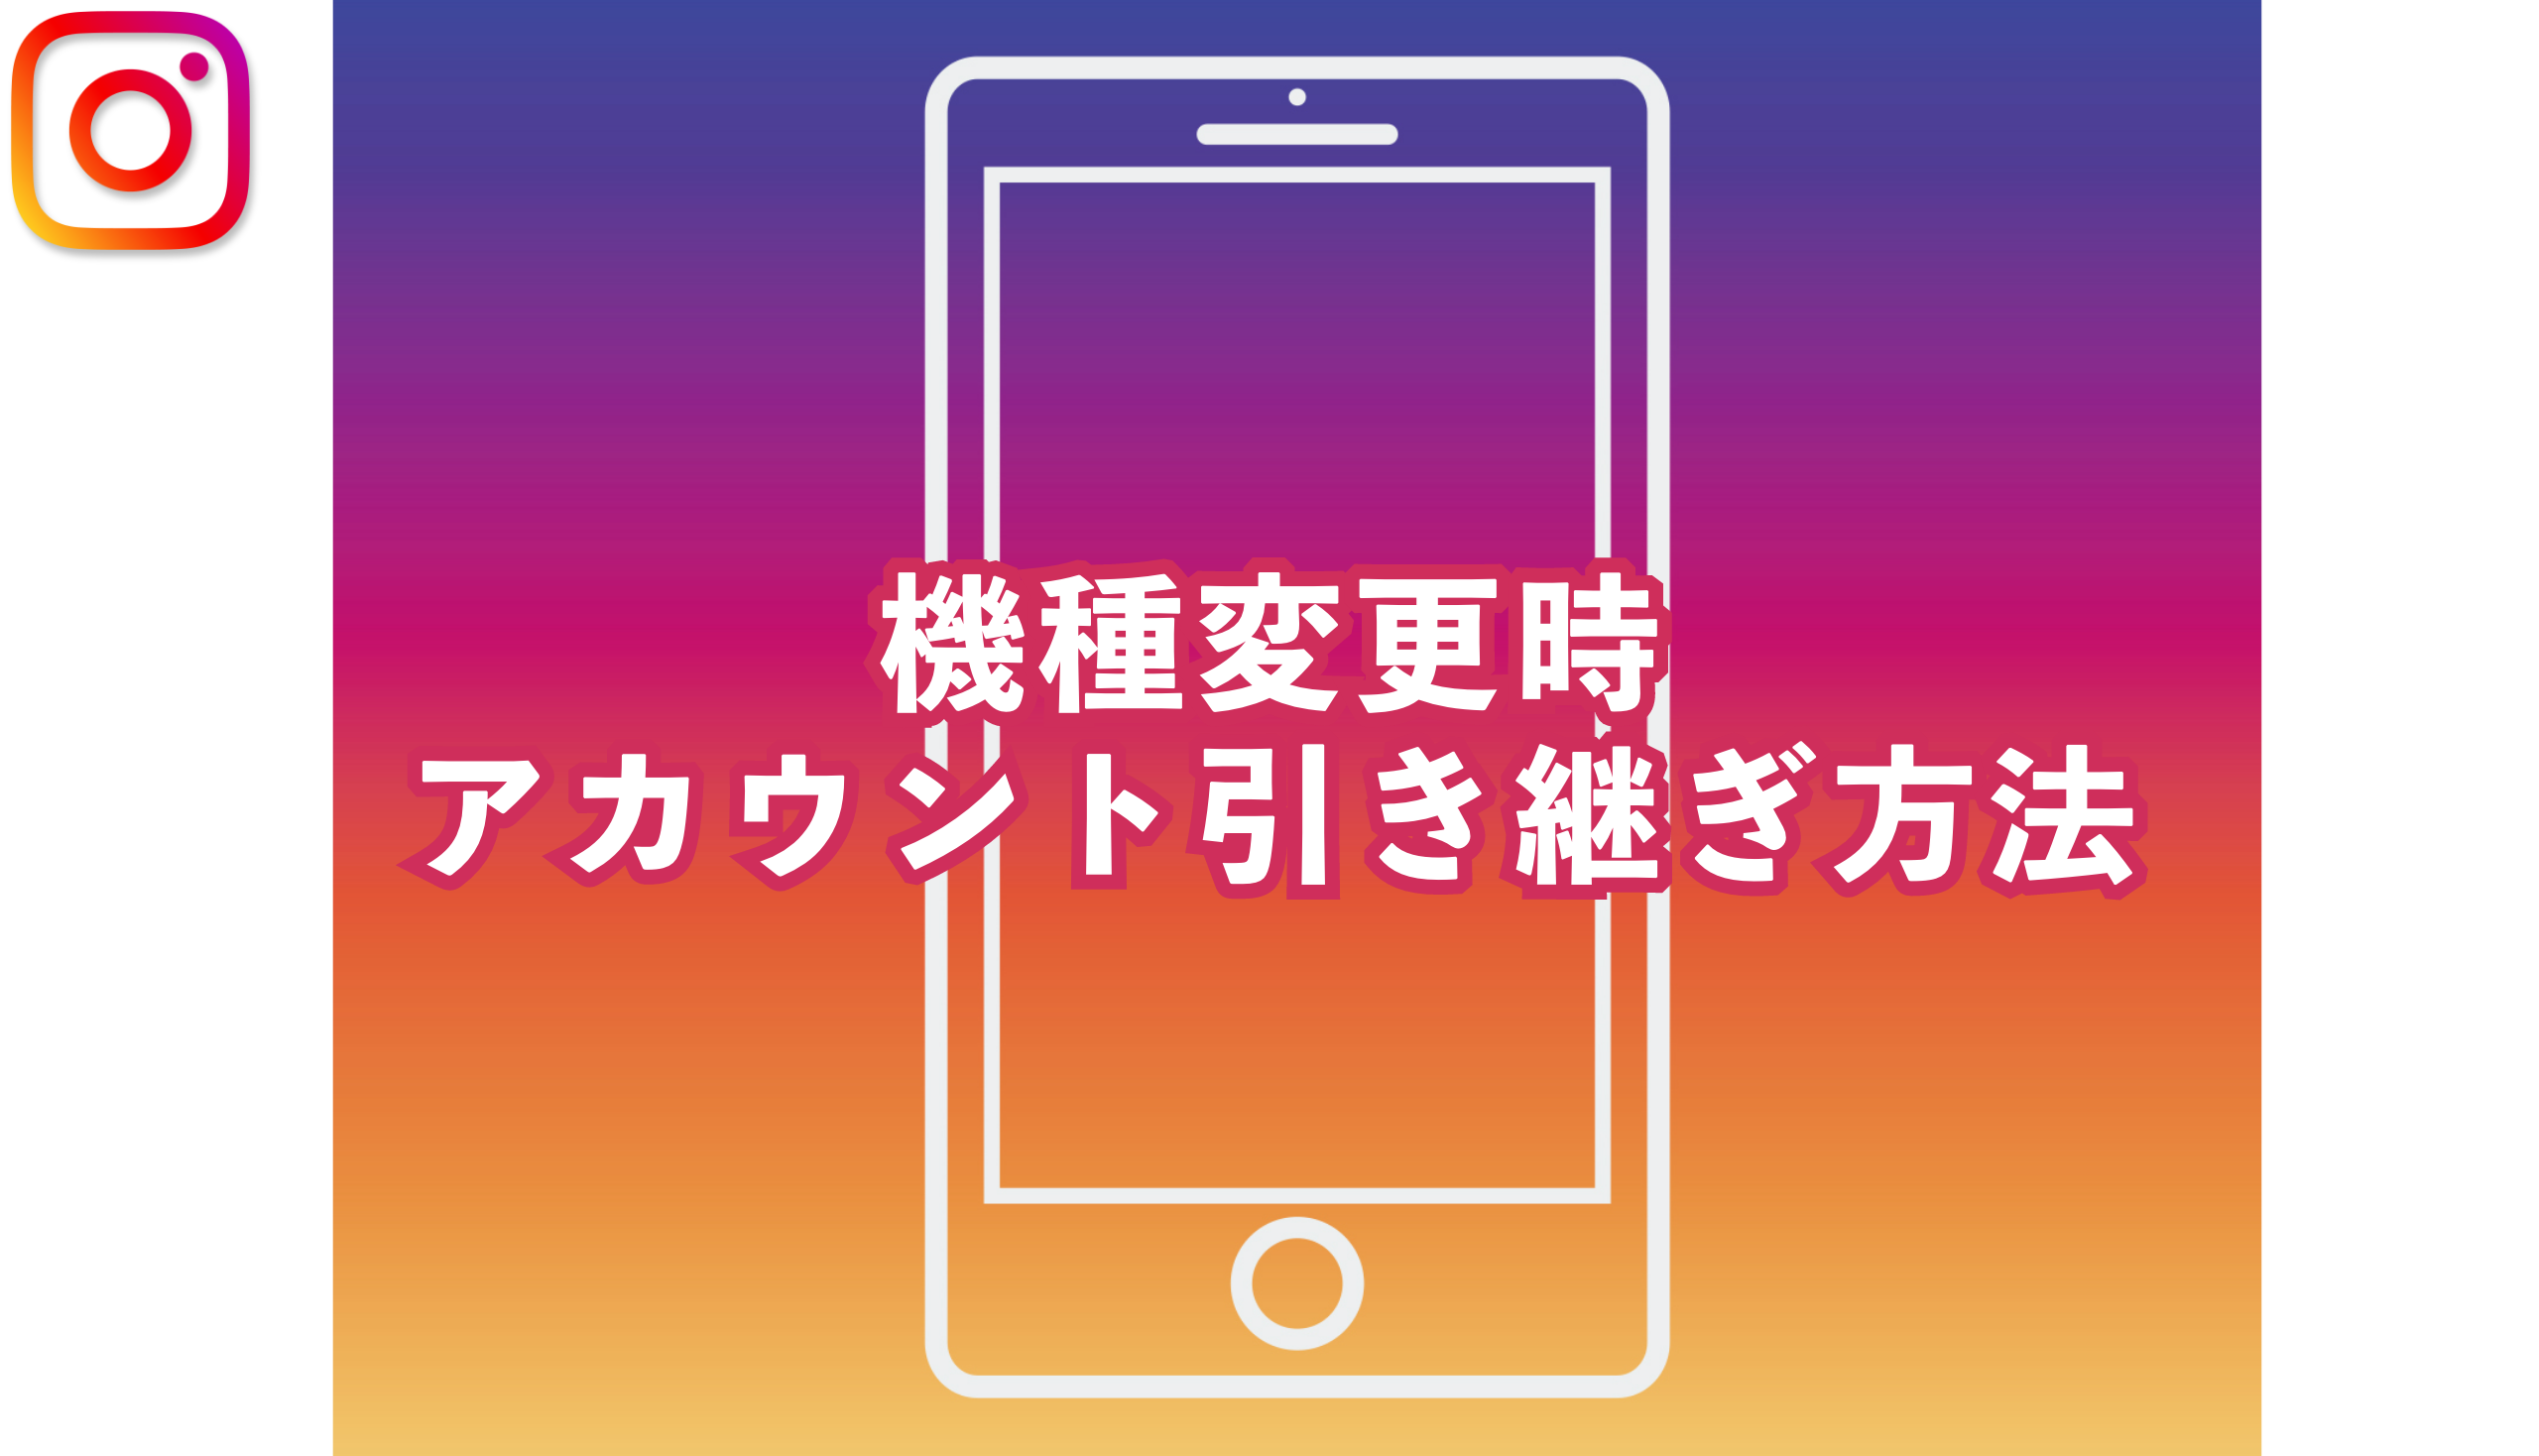 【Instagram】機種変更時のアカウント引き継ぎ方法を解説!